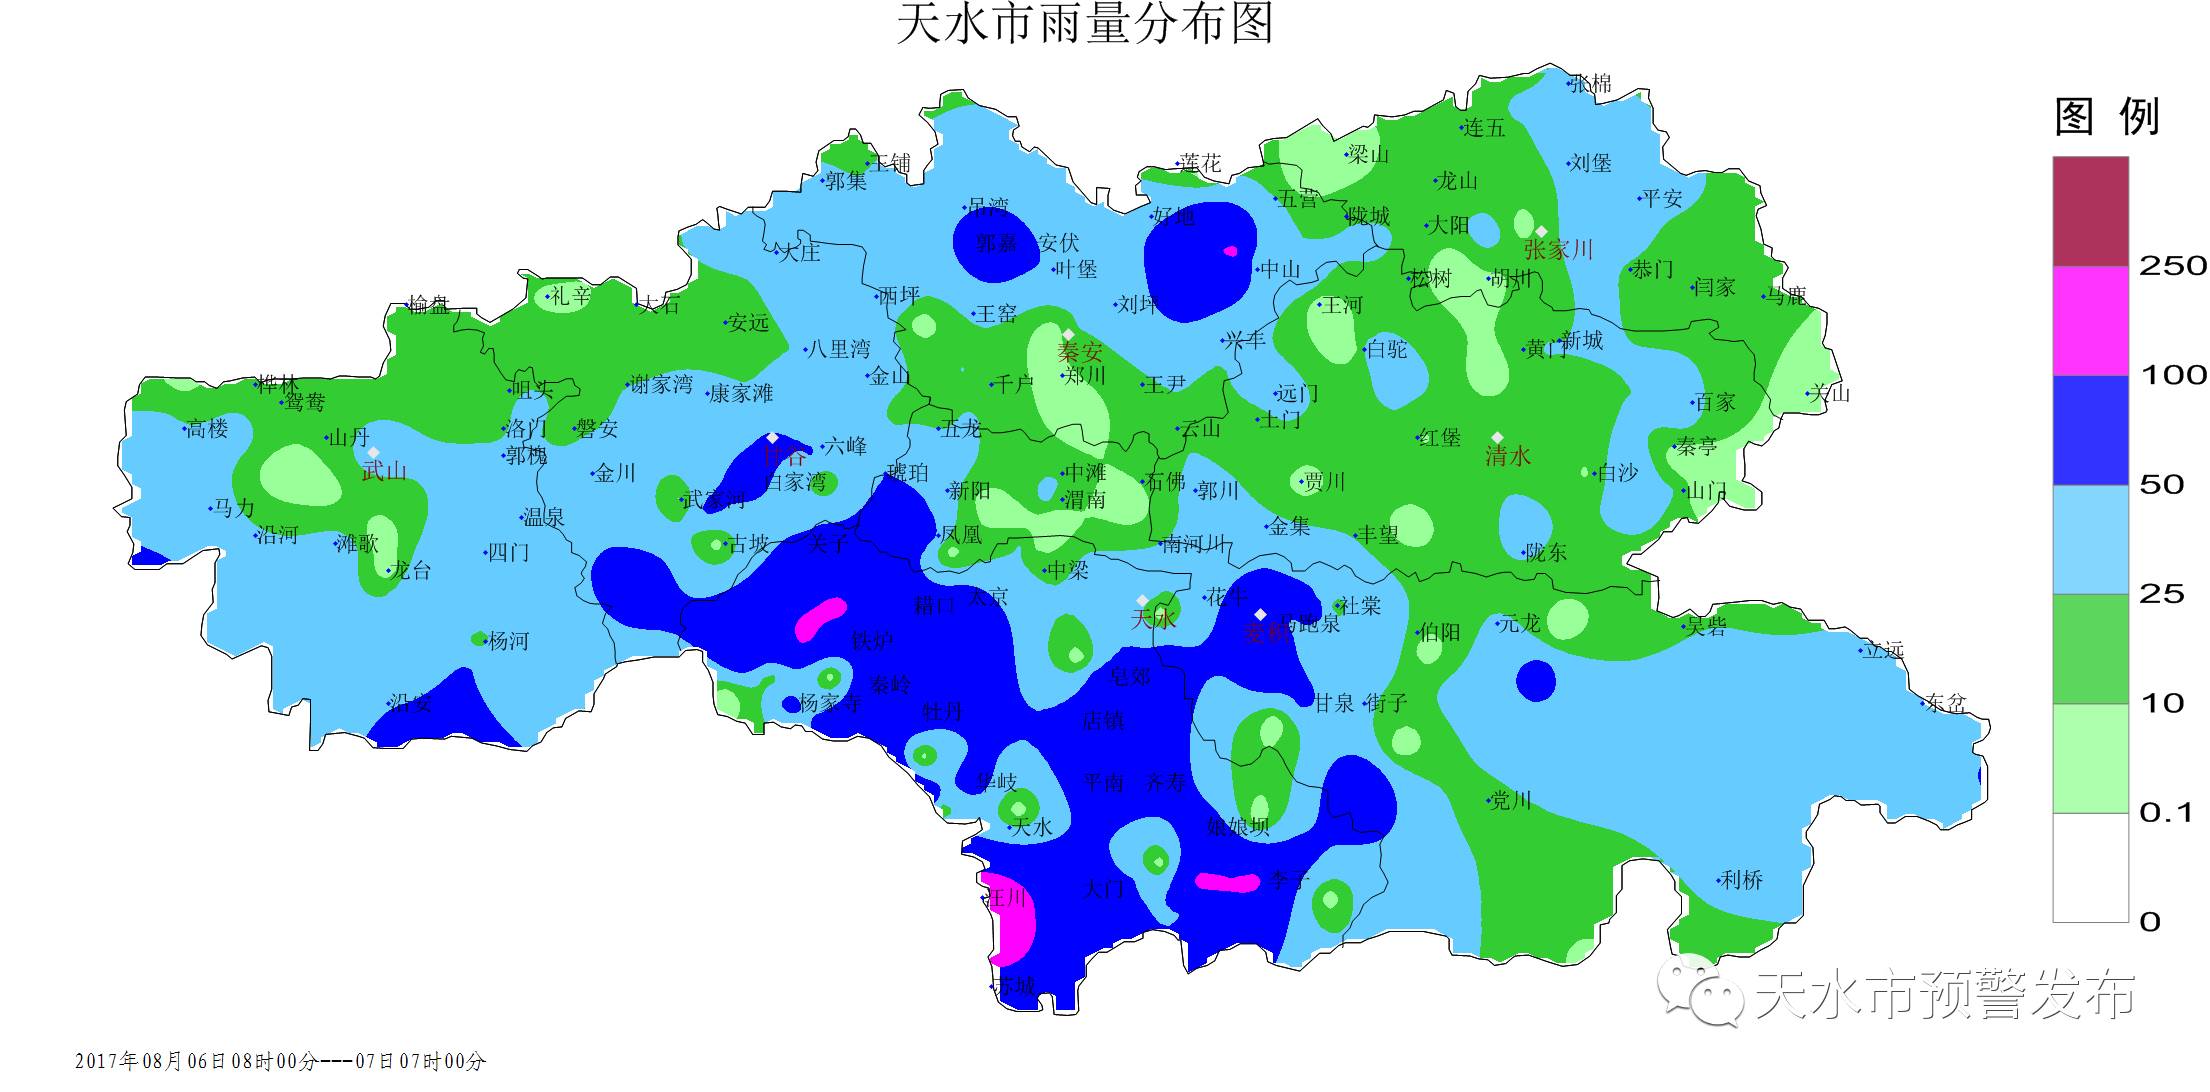 秦安县遭受暴雨洪涝!天水市发布地质灾害Ⅰ级(红色)气象风险预警 !图片